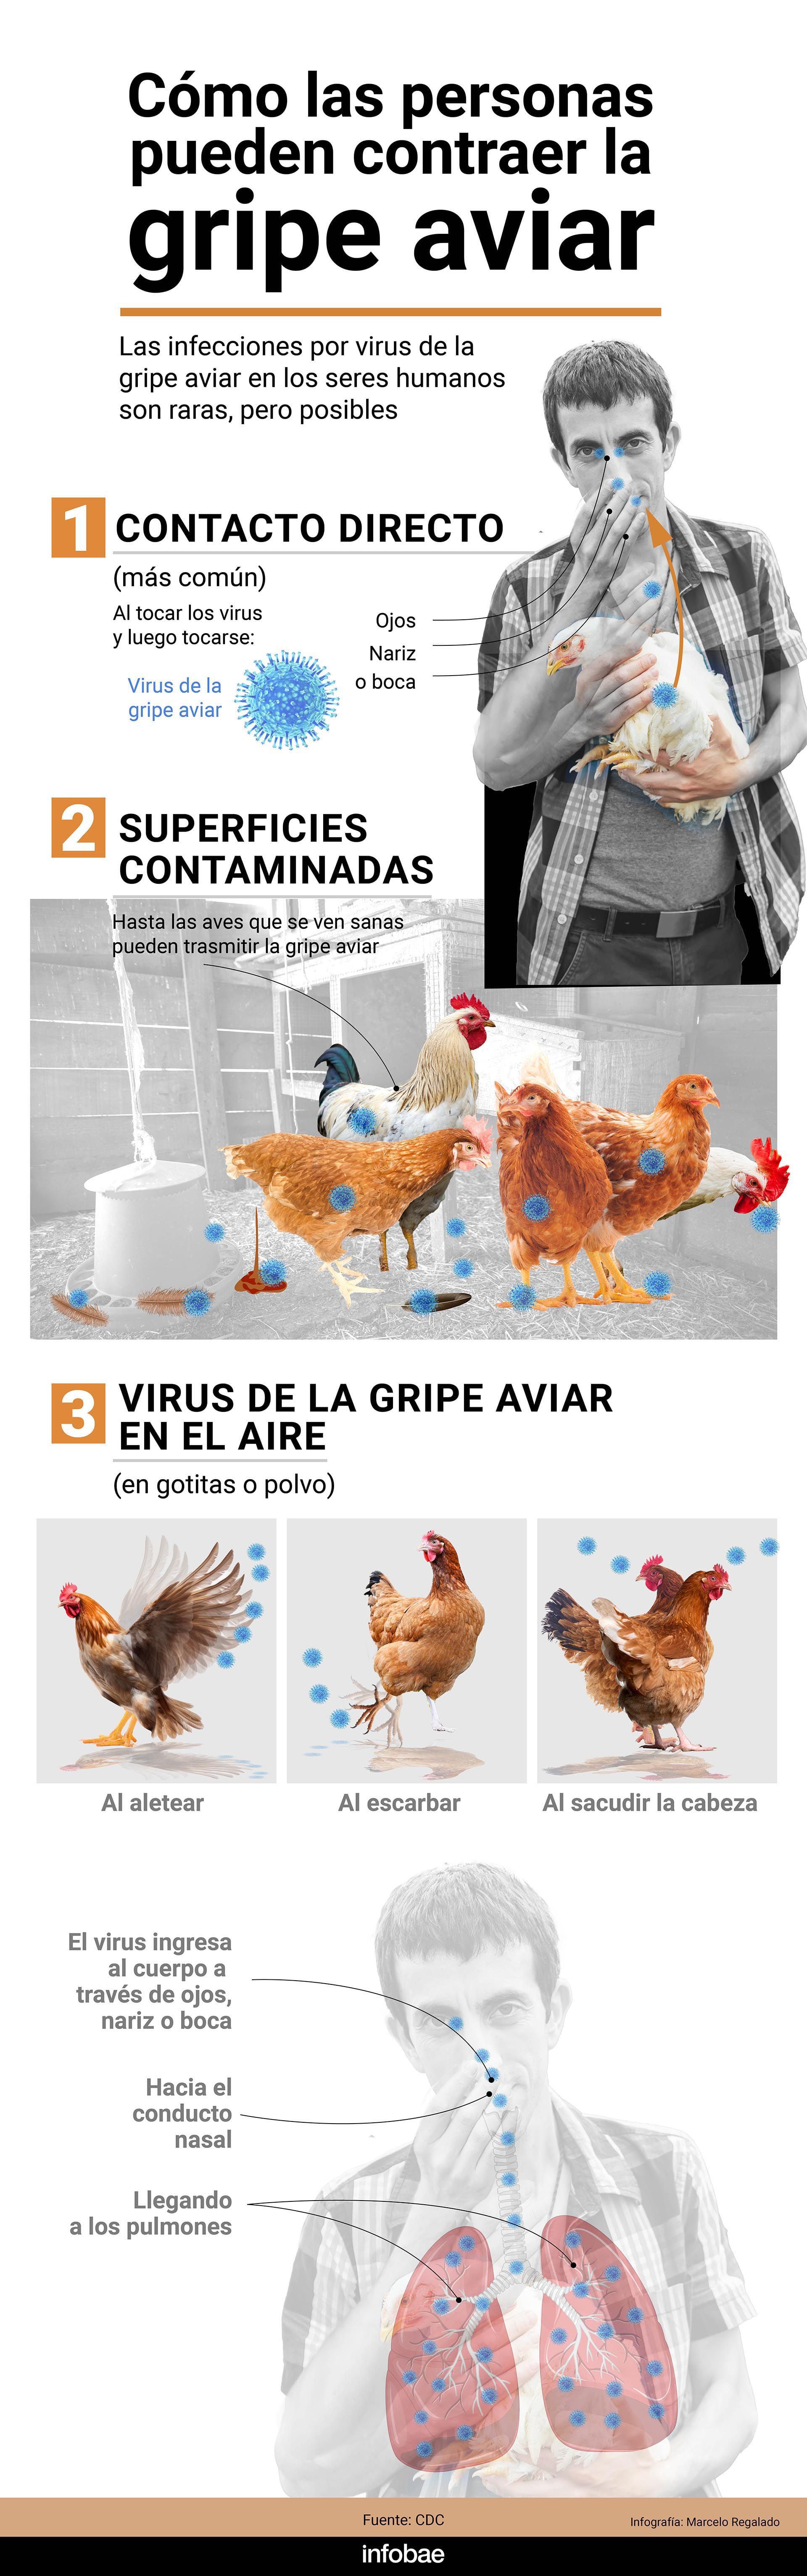 Los síntomas de la gripe aviar en las personas pueden ir desde una infección leve de las vías respiratorias superiores (fiebre y tos) hasta neumonía grave, síndrome de dificultad respiratoria aguda, shock e incluso la muerte/
